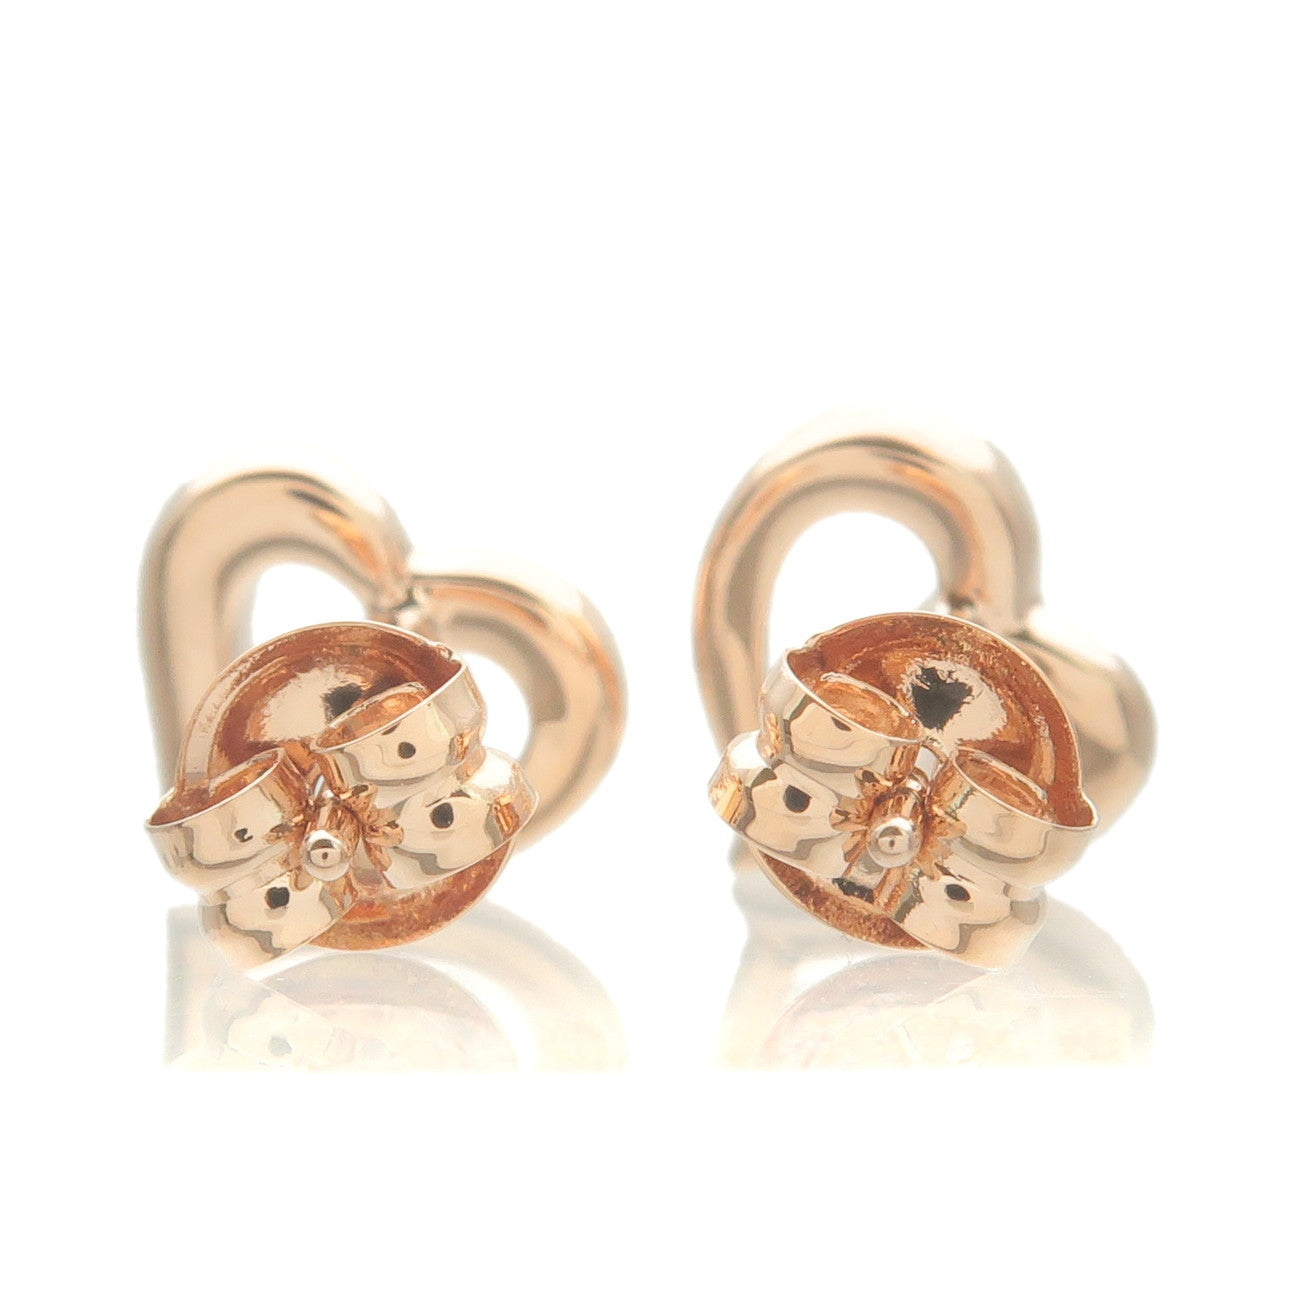 4C Heart Charm 5P Diamond Earrings K18PG 750 Rose Gold